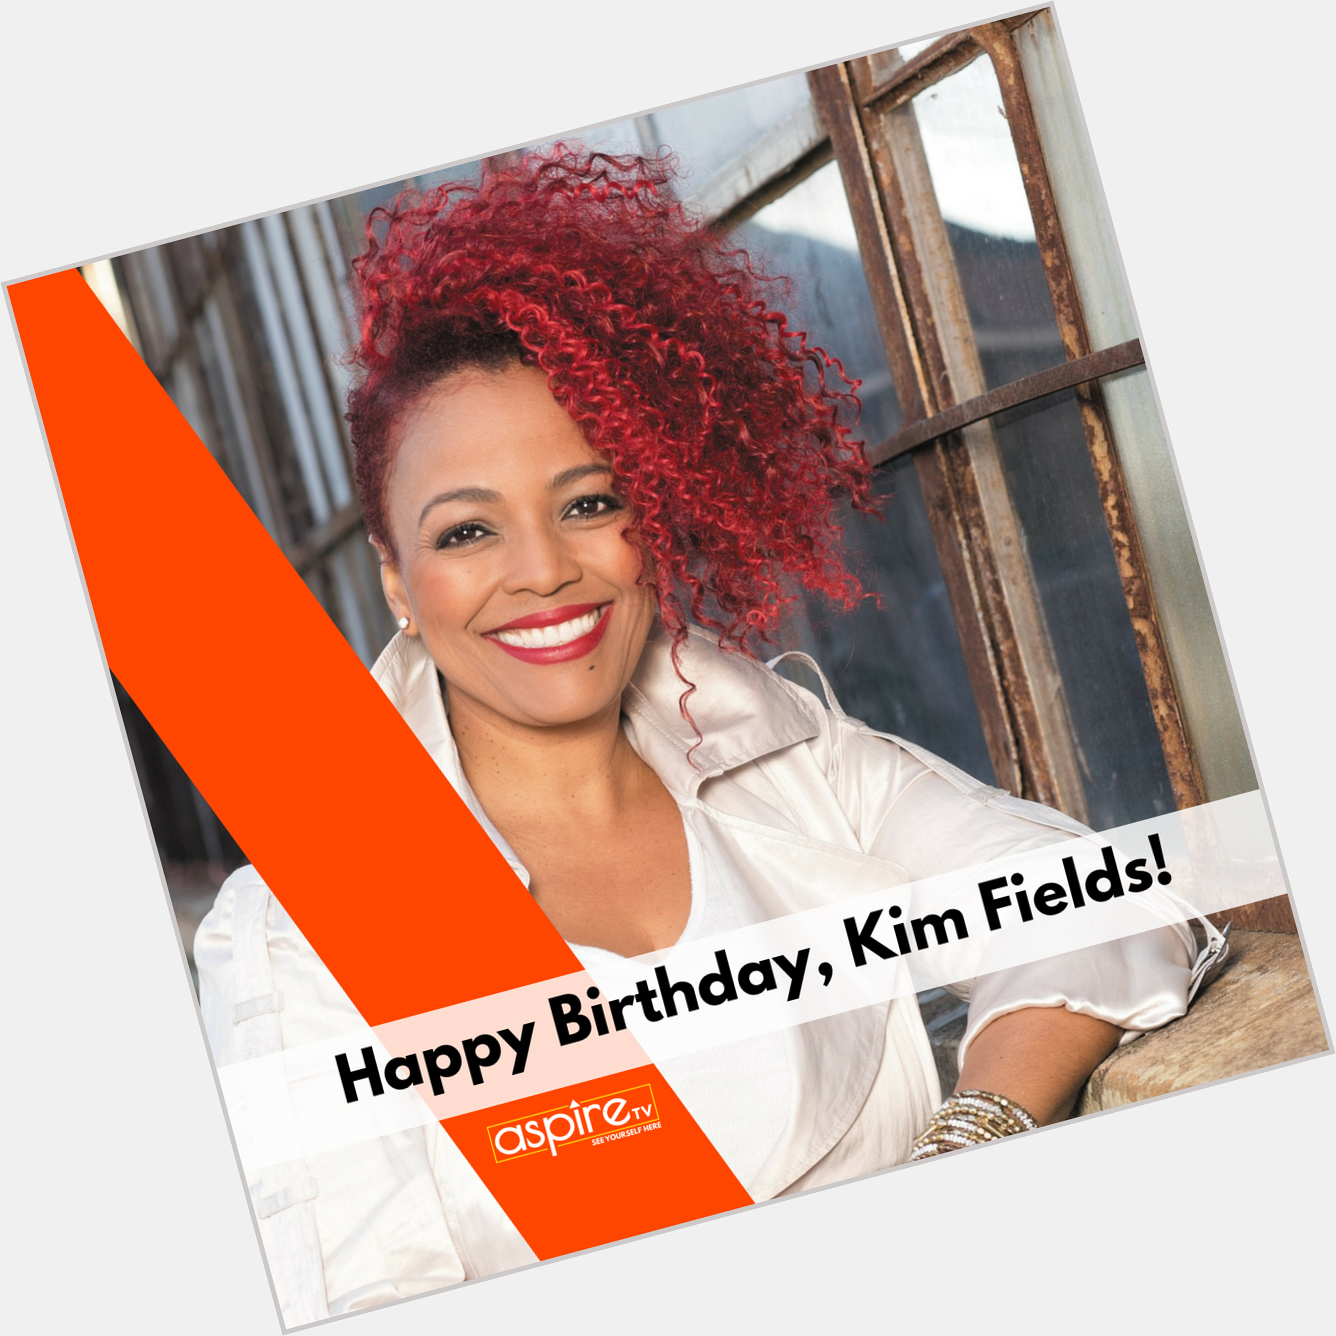 Happy Birthday, Kim Fields! 